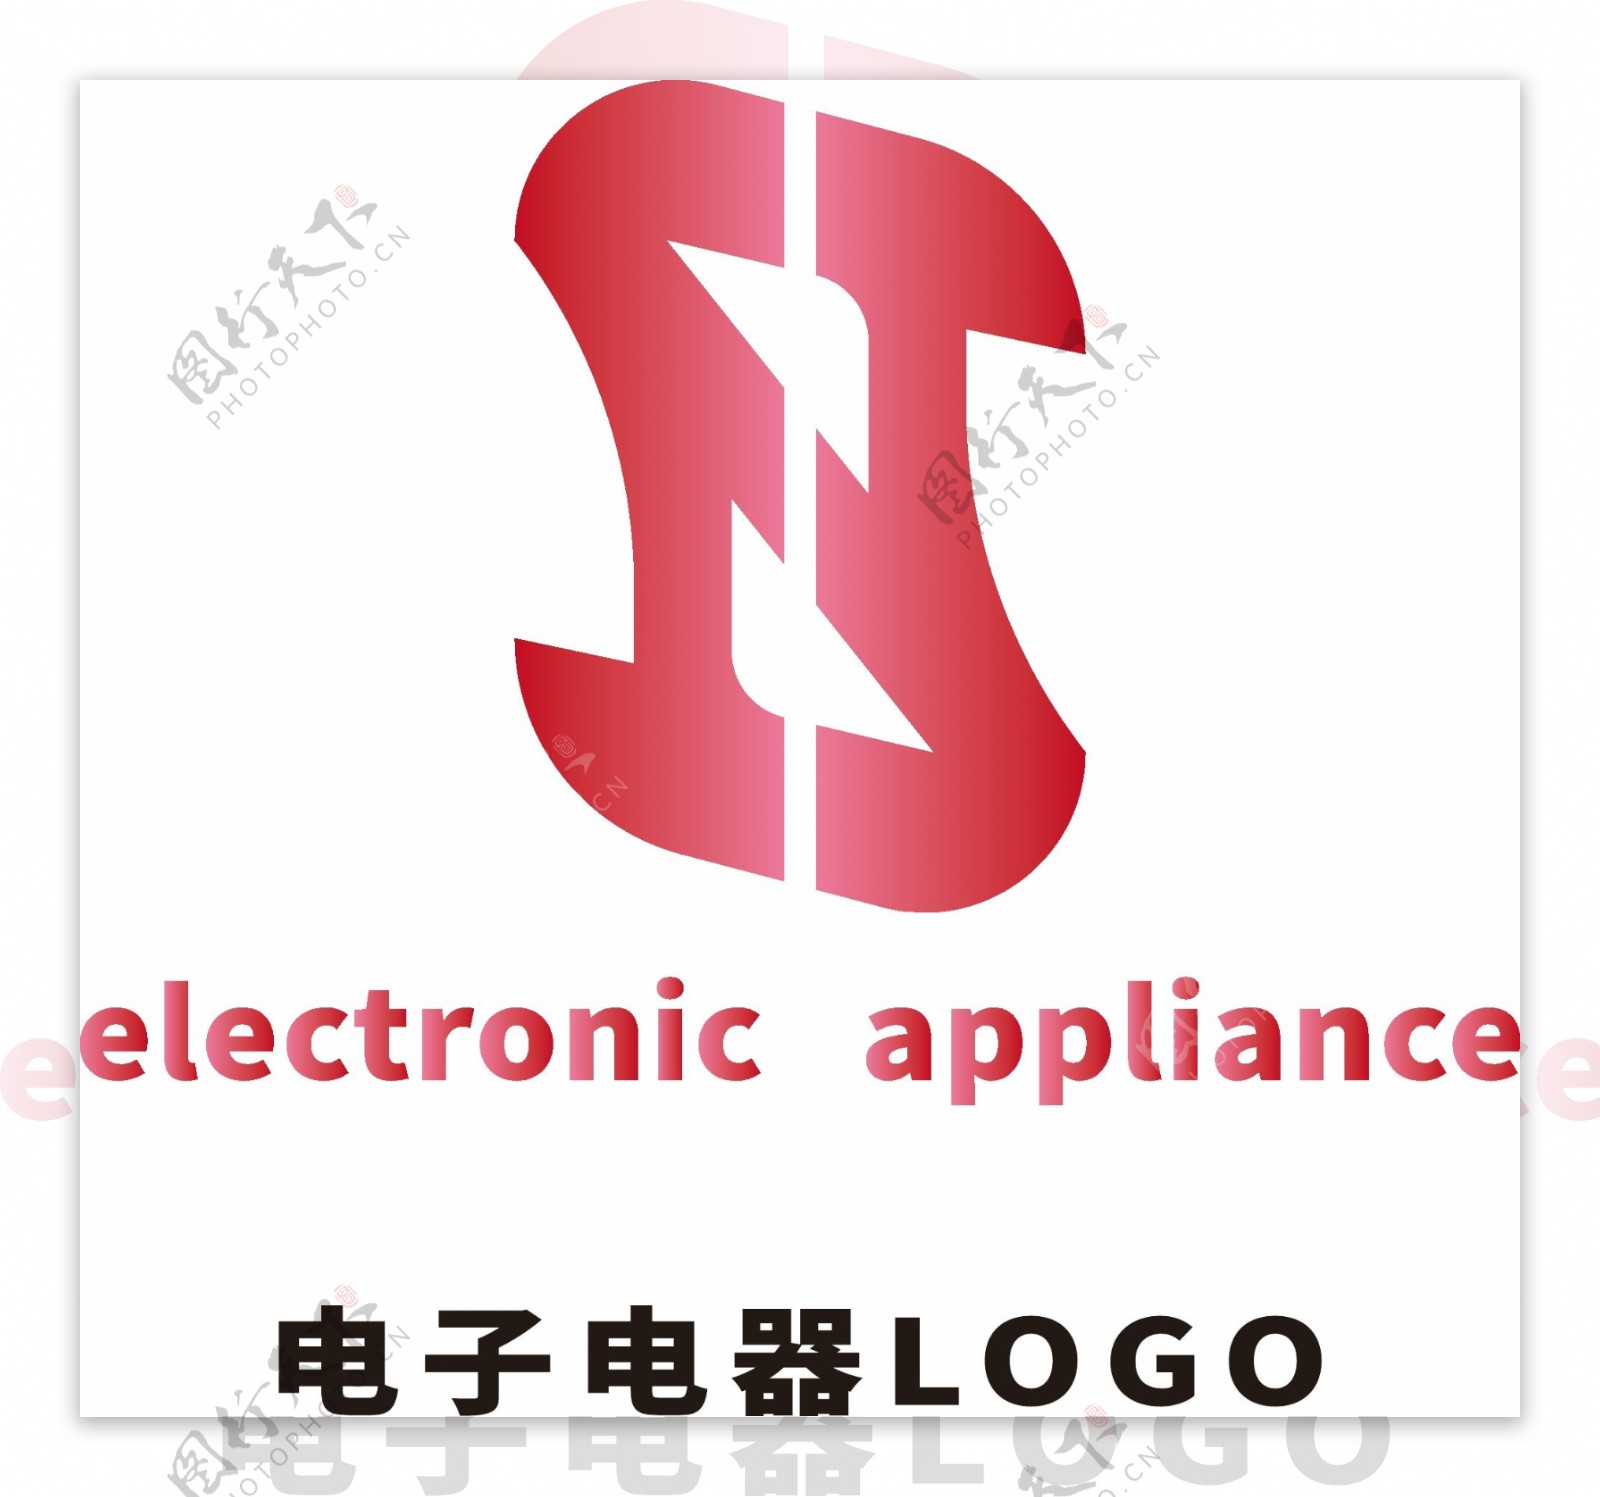 红色渐变金属A字母变形电子电器logo